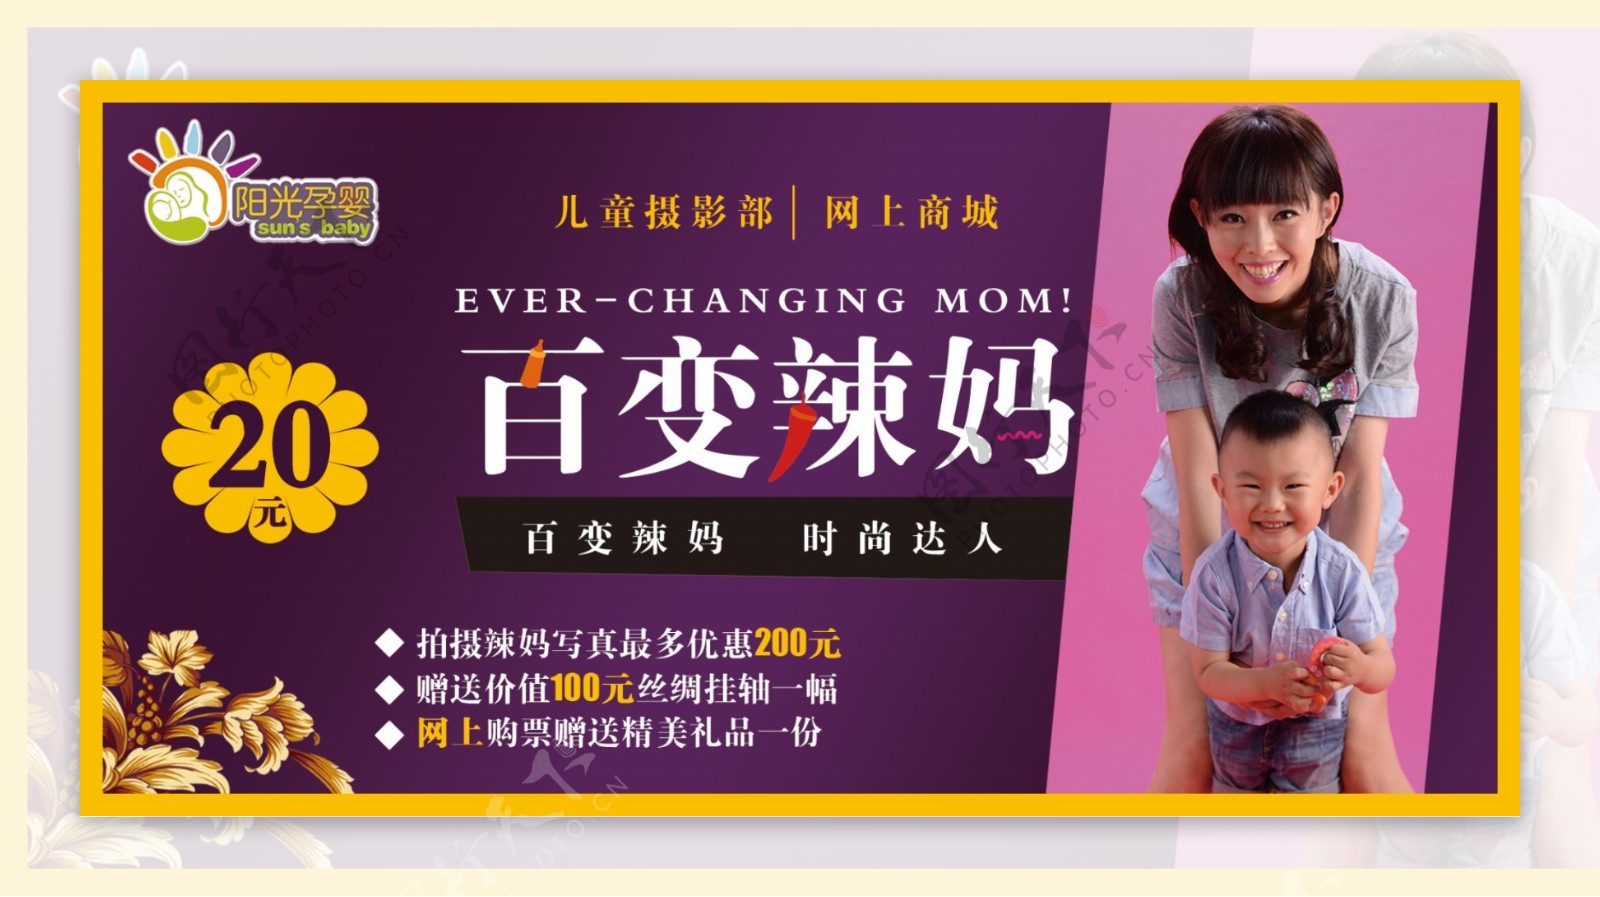 母亲节辣妈名片展示宣传海报_图片模板素材-稿定设计